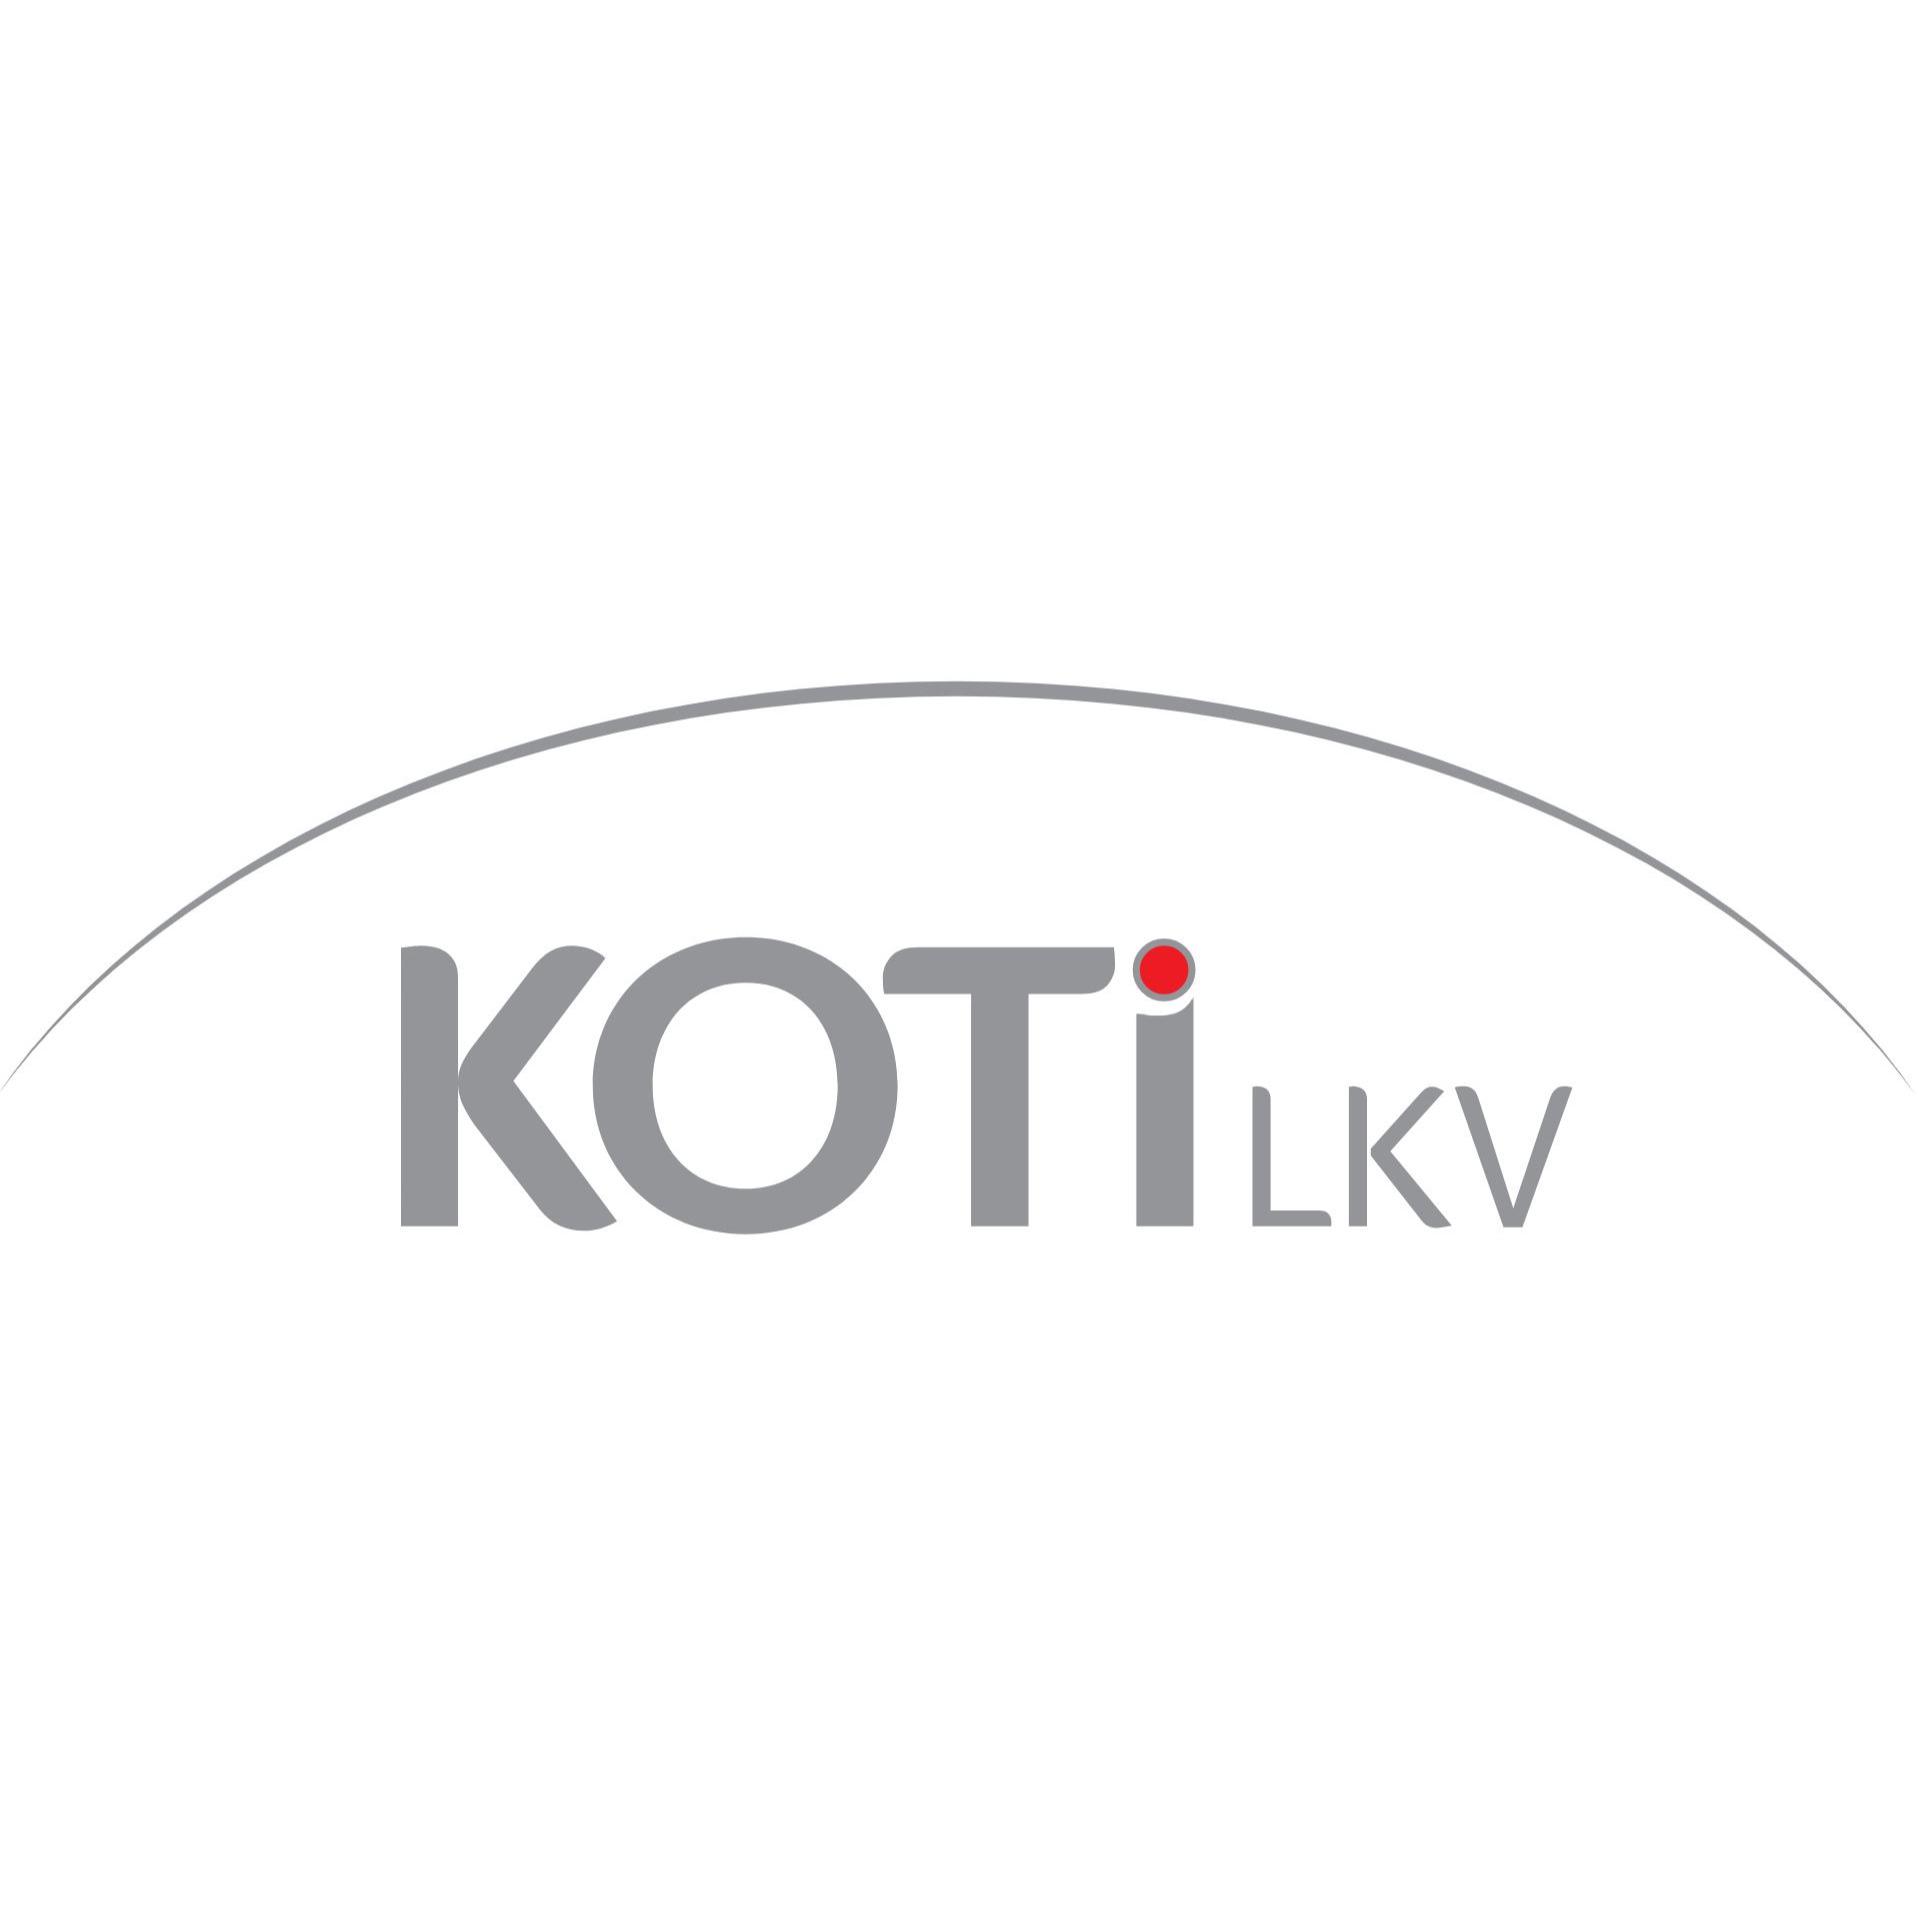 KOTI LKV Uudenmaan Laatuvälitys Oy Logo